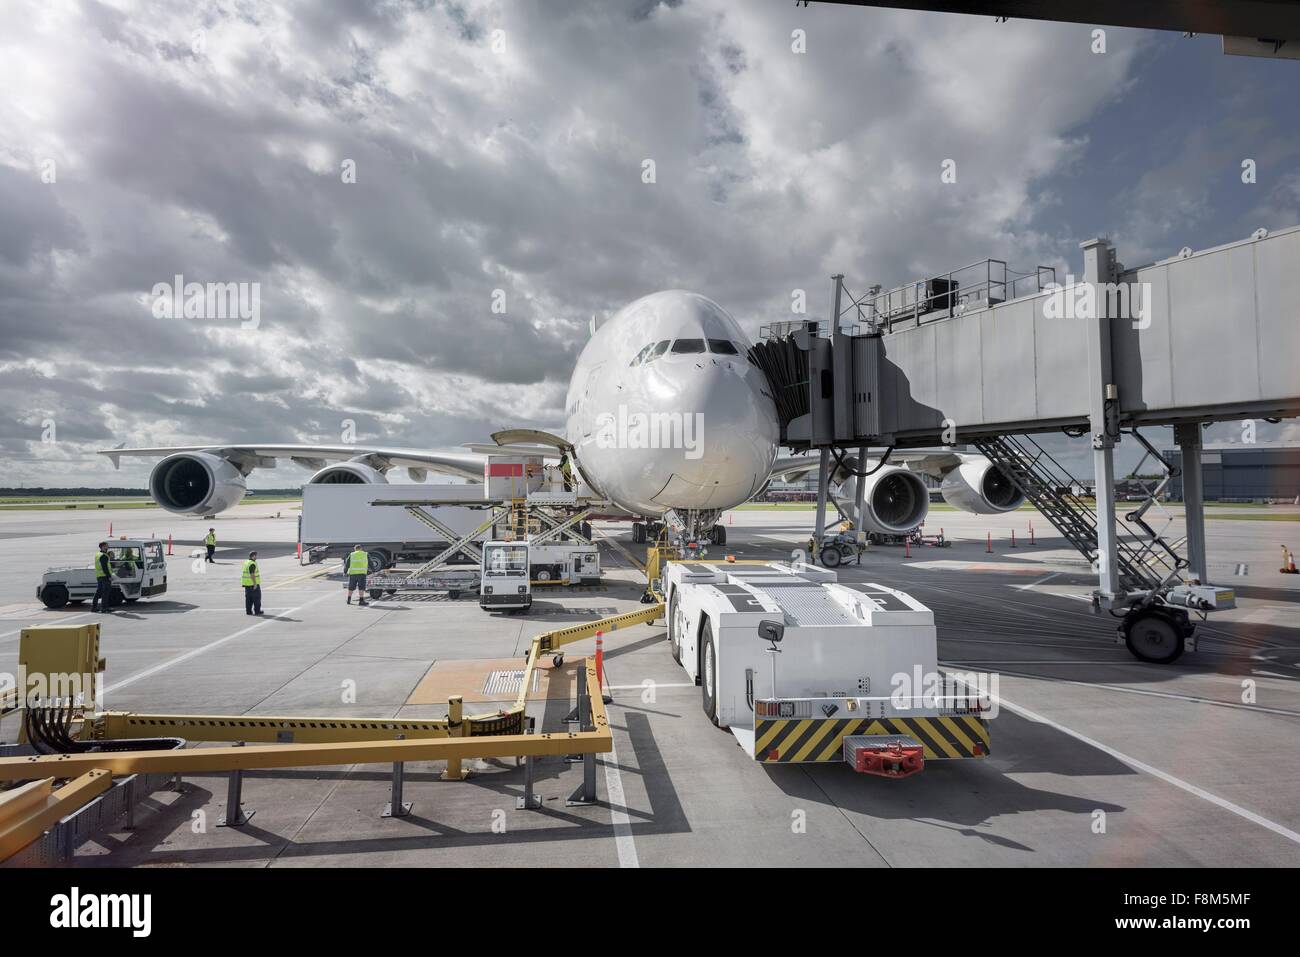 A380 aircraft and tug at stand at airport Stock Photo